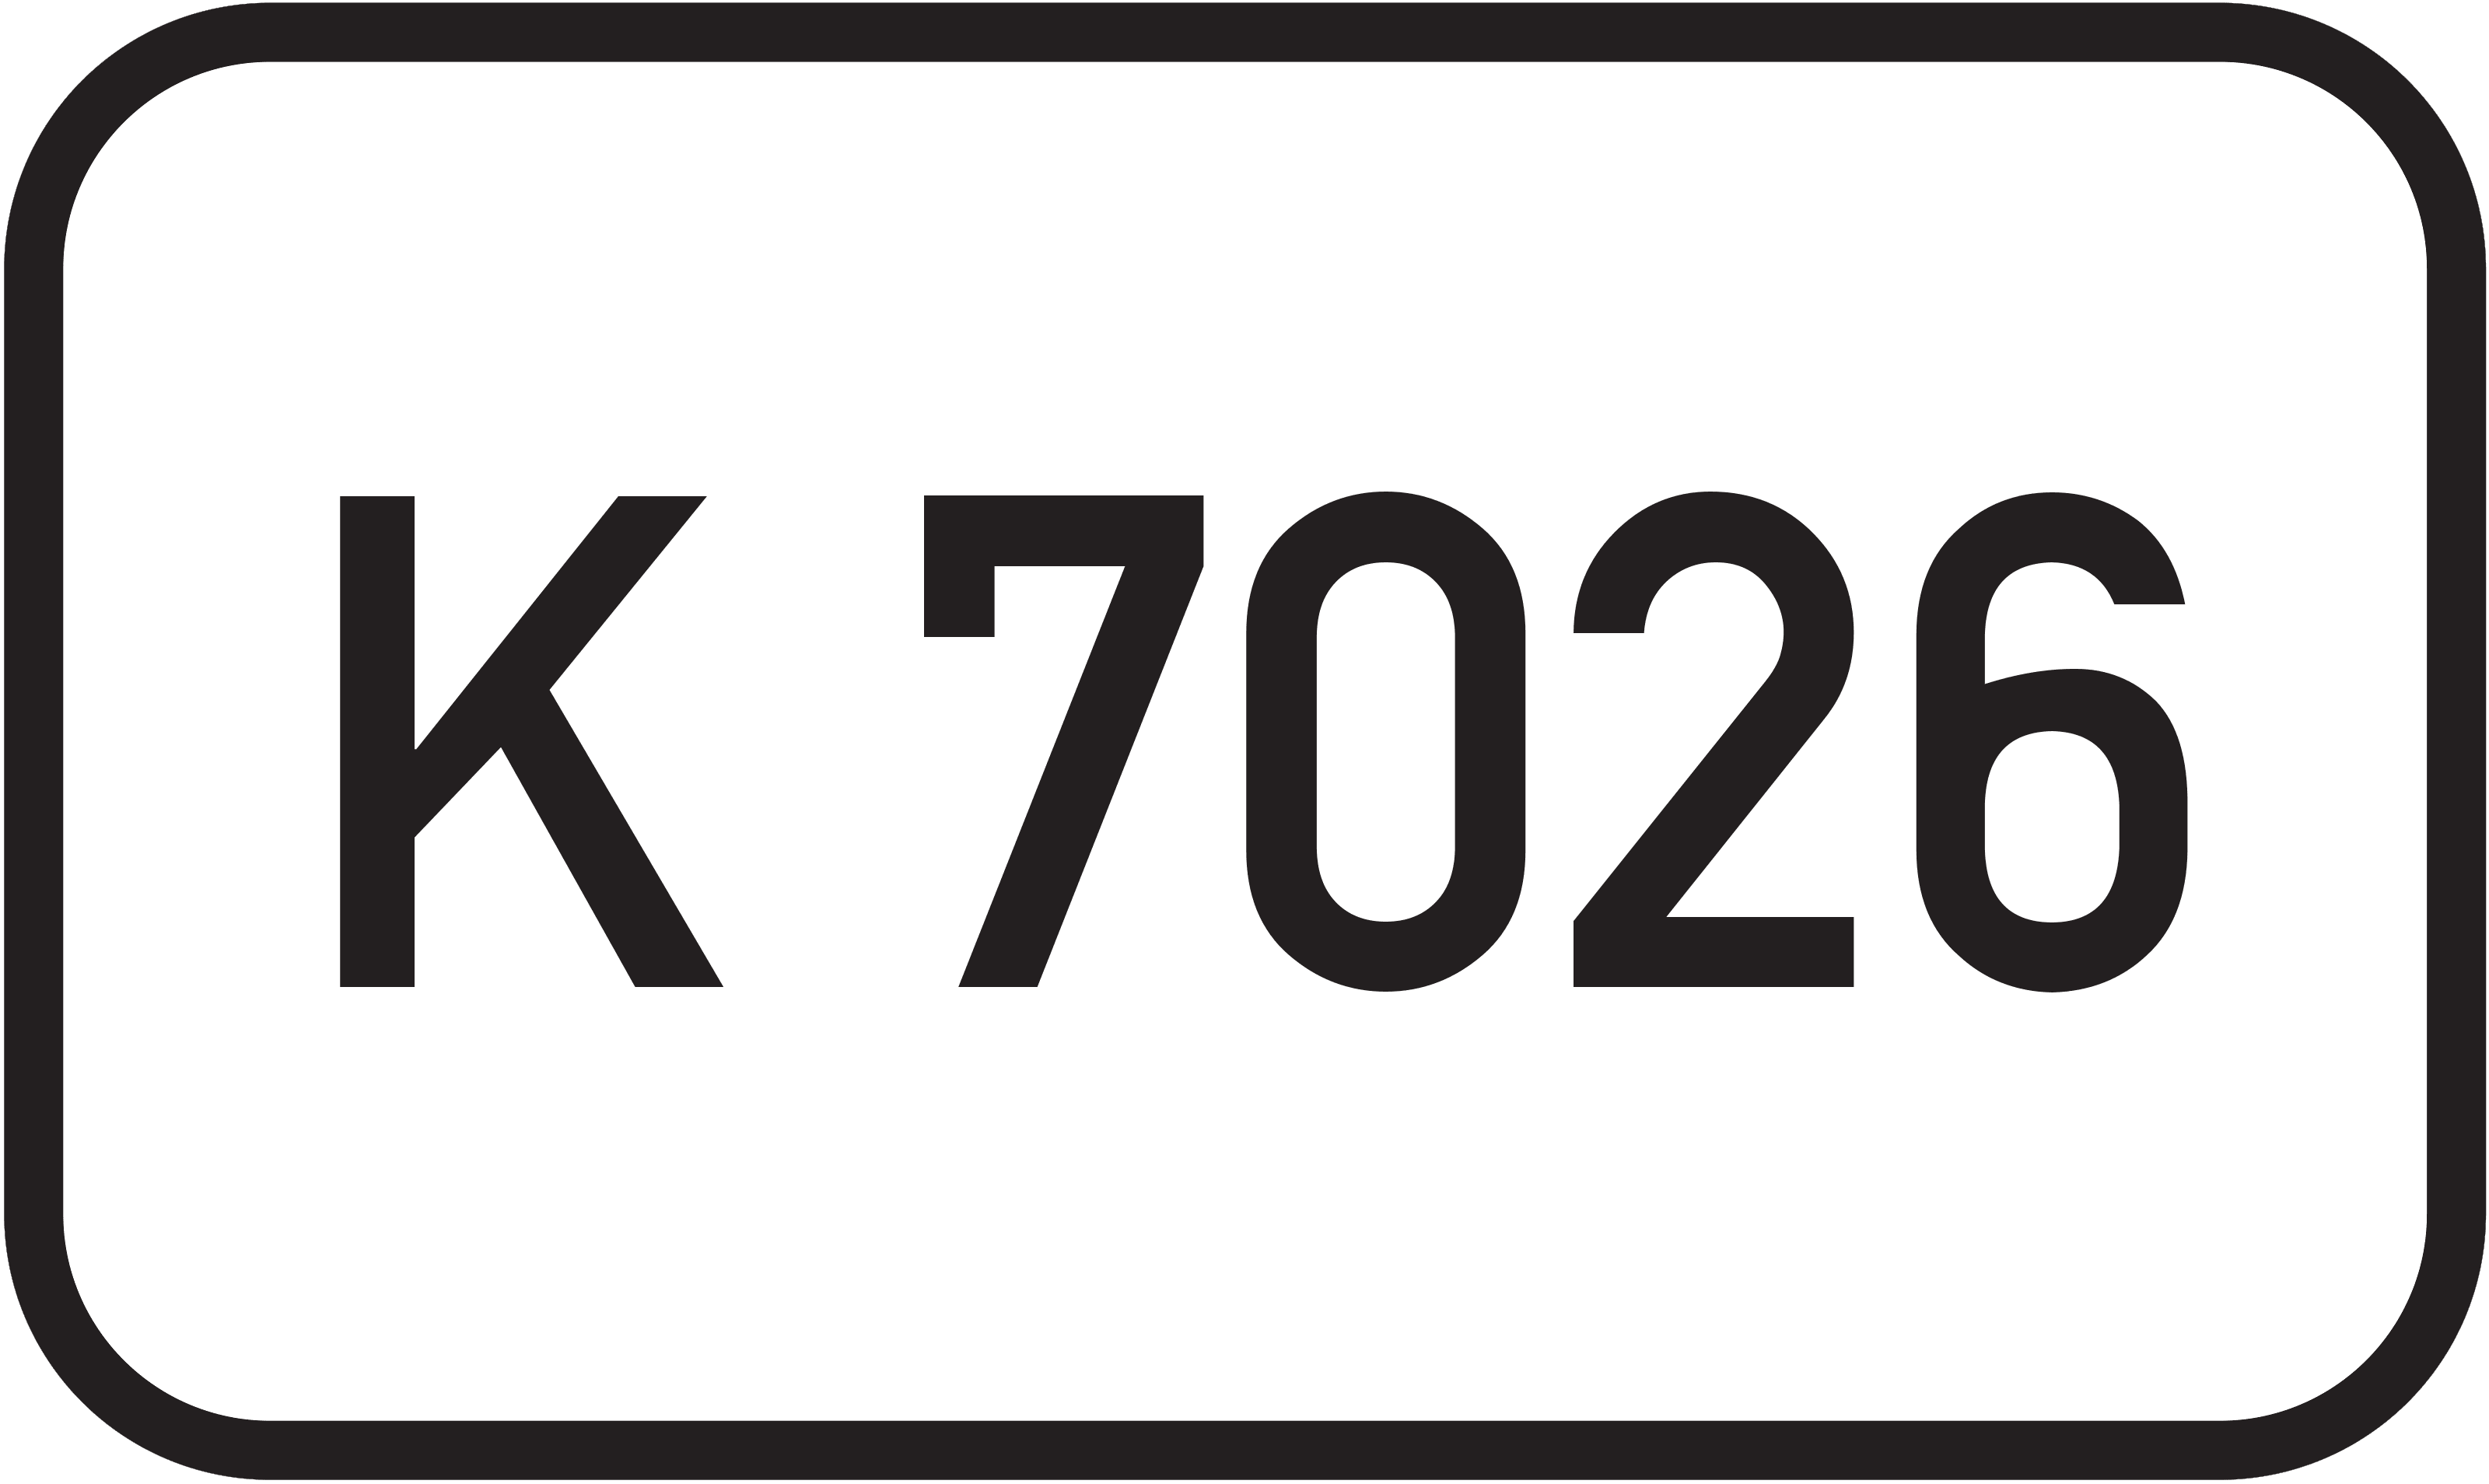 Bundesstraße K 7026